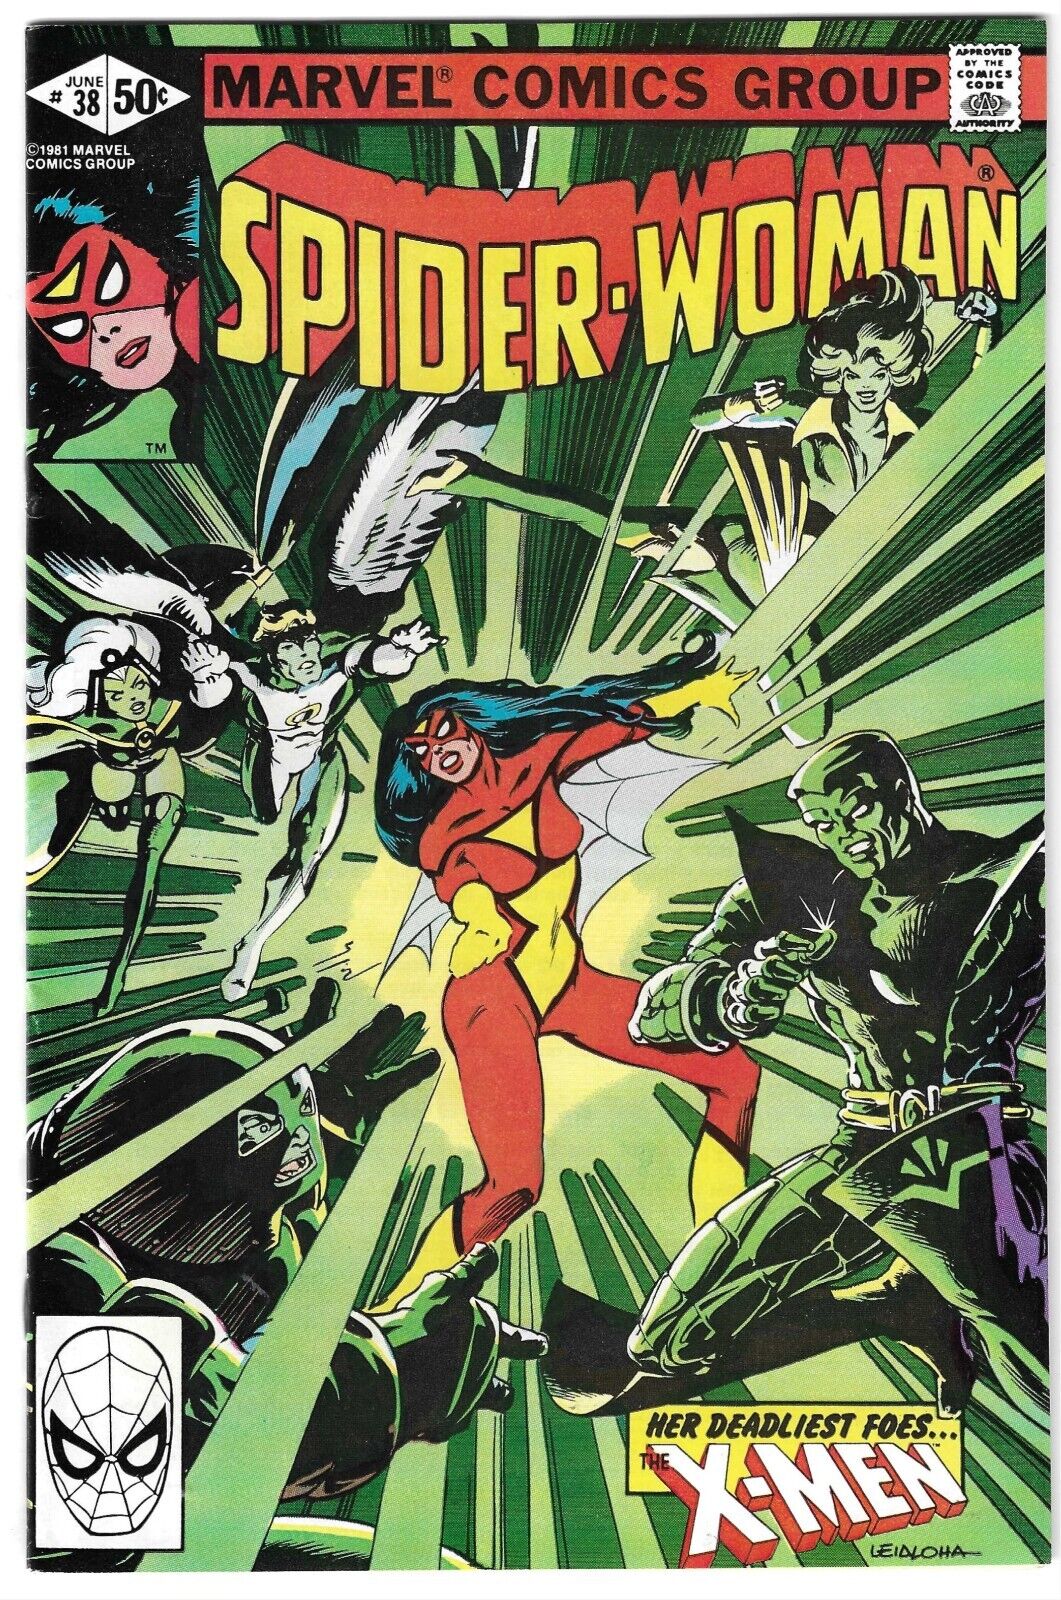 SPIDER-WOMAN #38 NM 1981 KEY UNCANNY X-MEN APP CHRIS CLAREMONT MARVEL COMICS